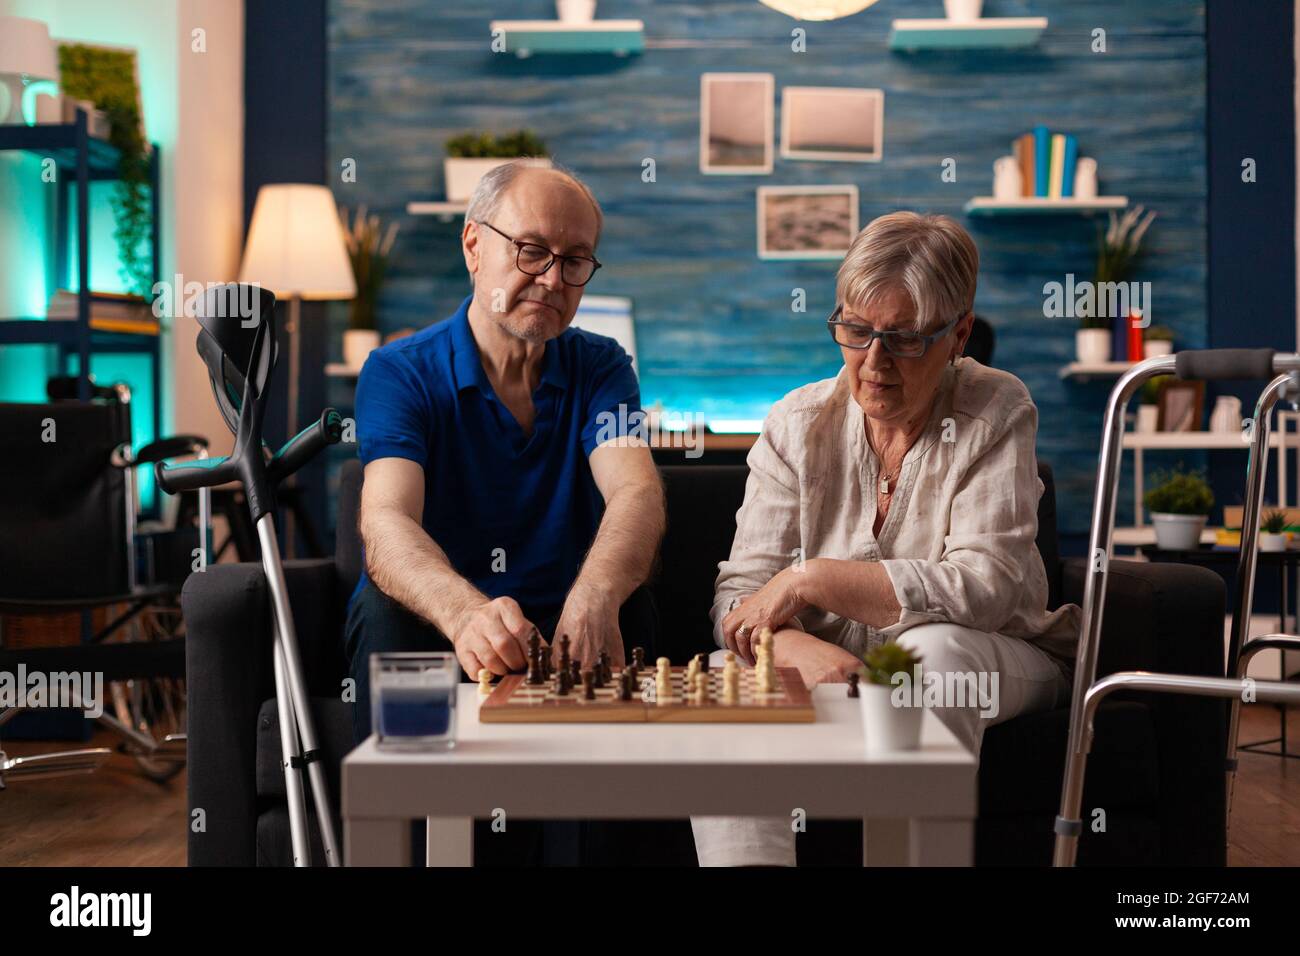 Coppia anziana che gioca a scacchi a bordo seduti a casa insieme sul divano. Vecchio uomo e donna in pensione maturo con crutches Walk Frame e sedia a rotelle godendo il gioco di mente per l'intrattenimento Foto Stock